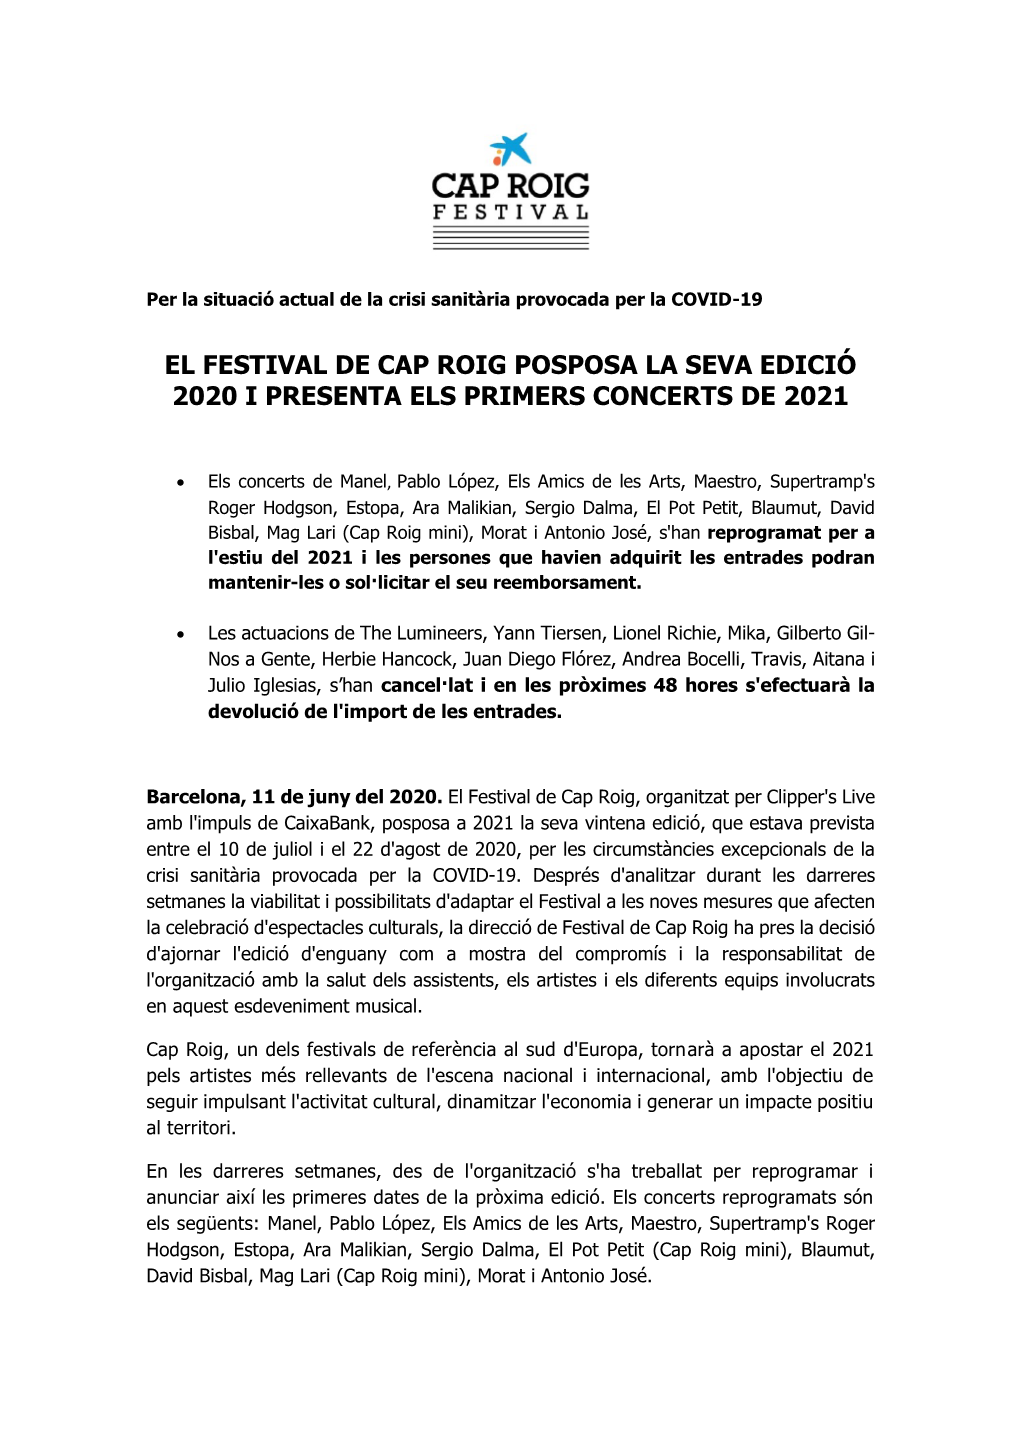 El Festival De Cap Roig Posposa La Seva Edició 2020 I Presenta Els Primers Concerts De 2021